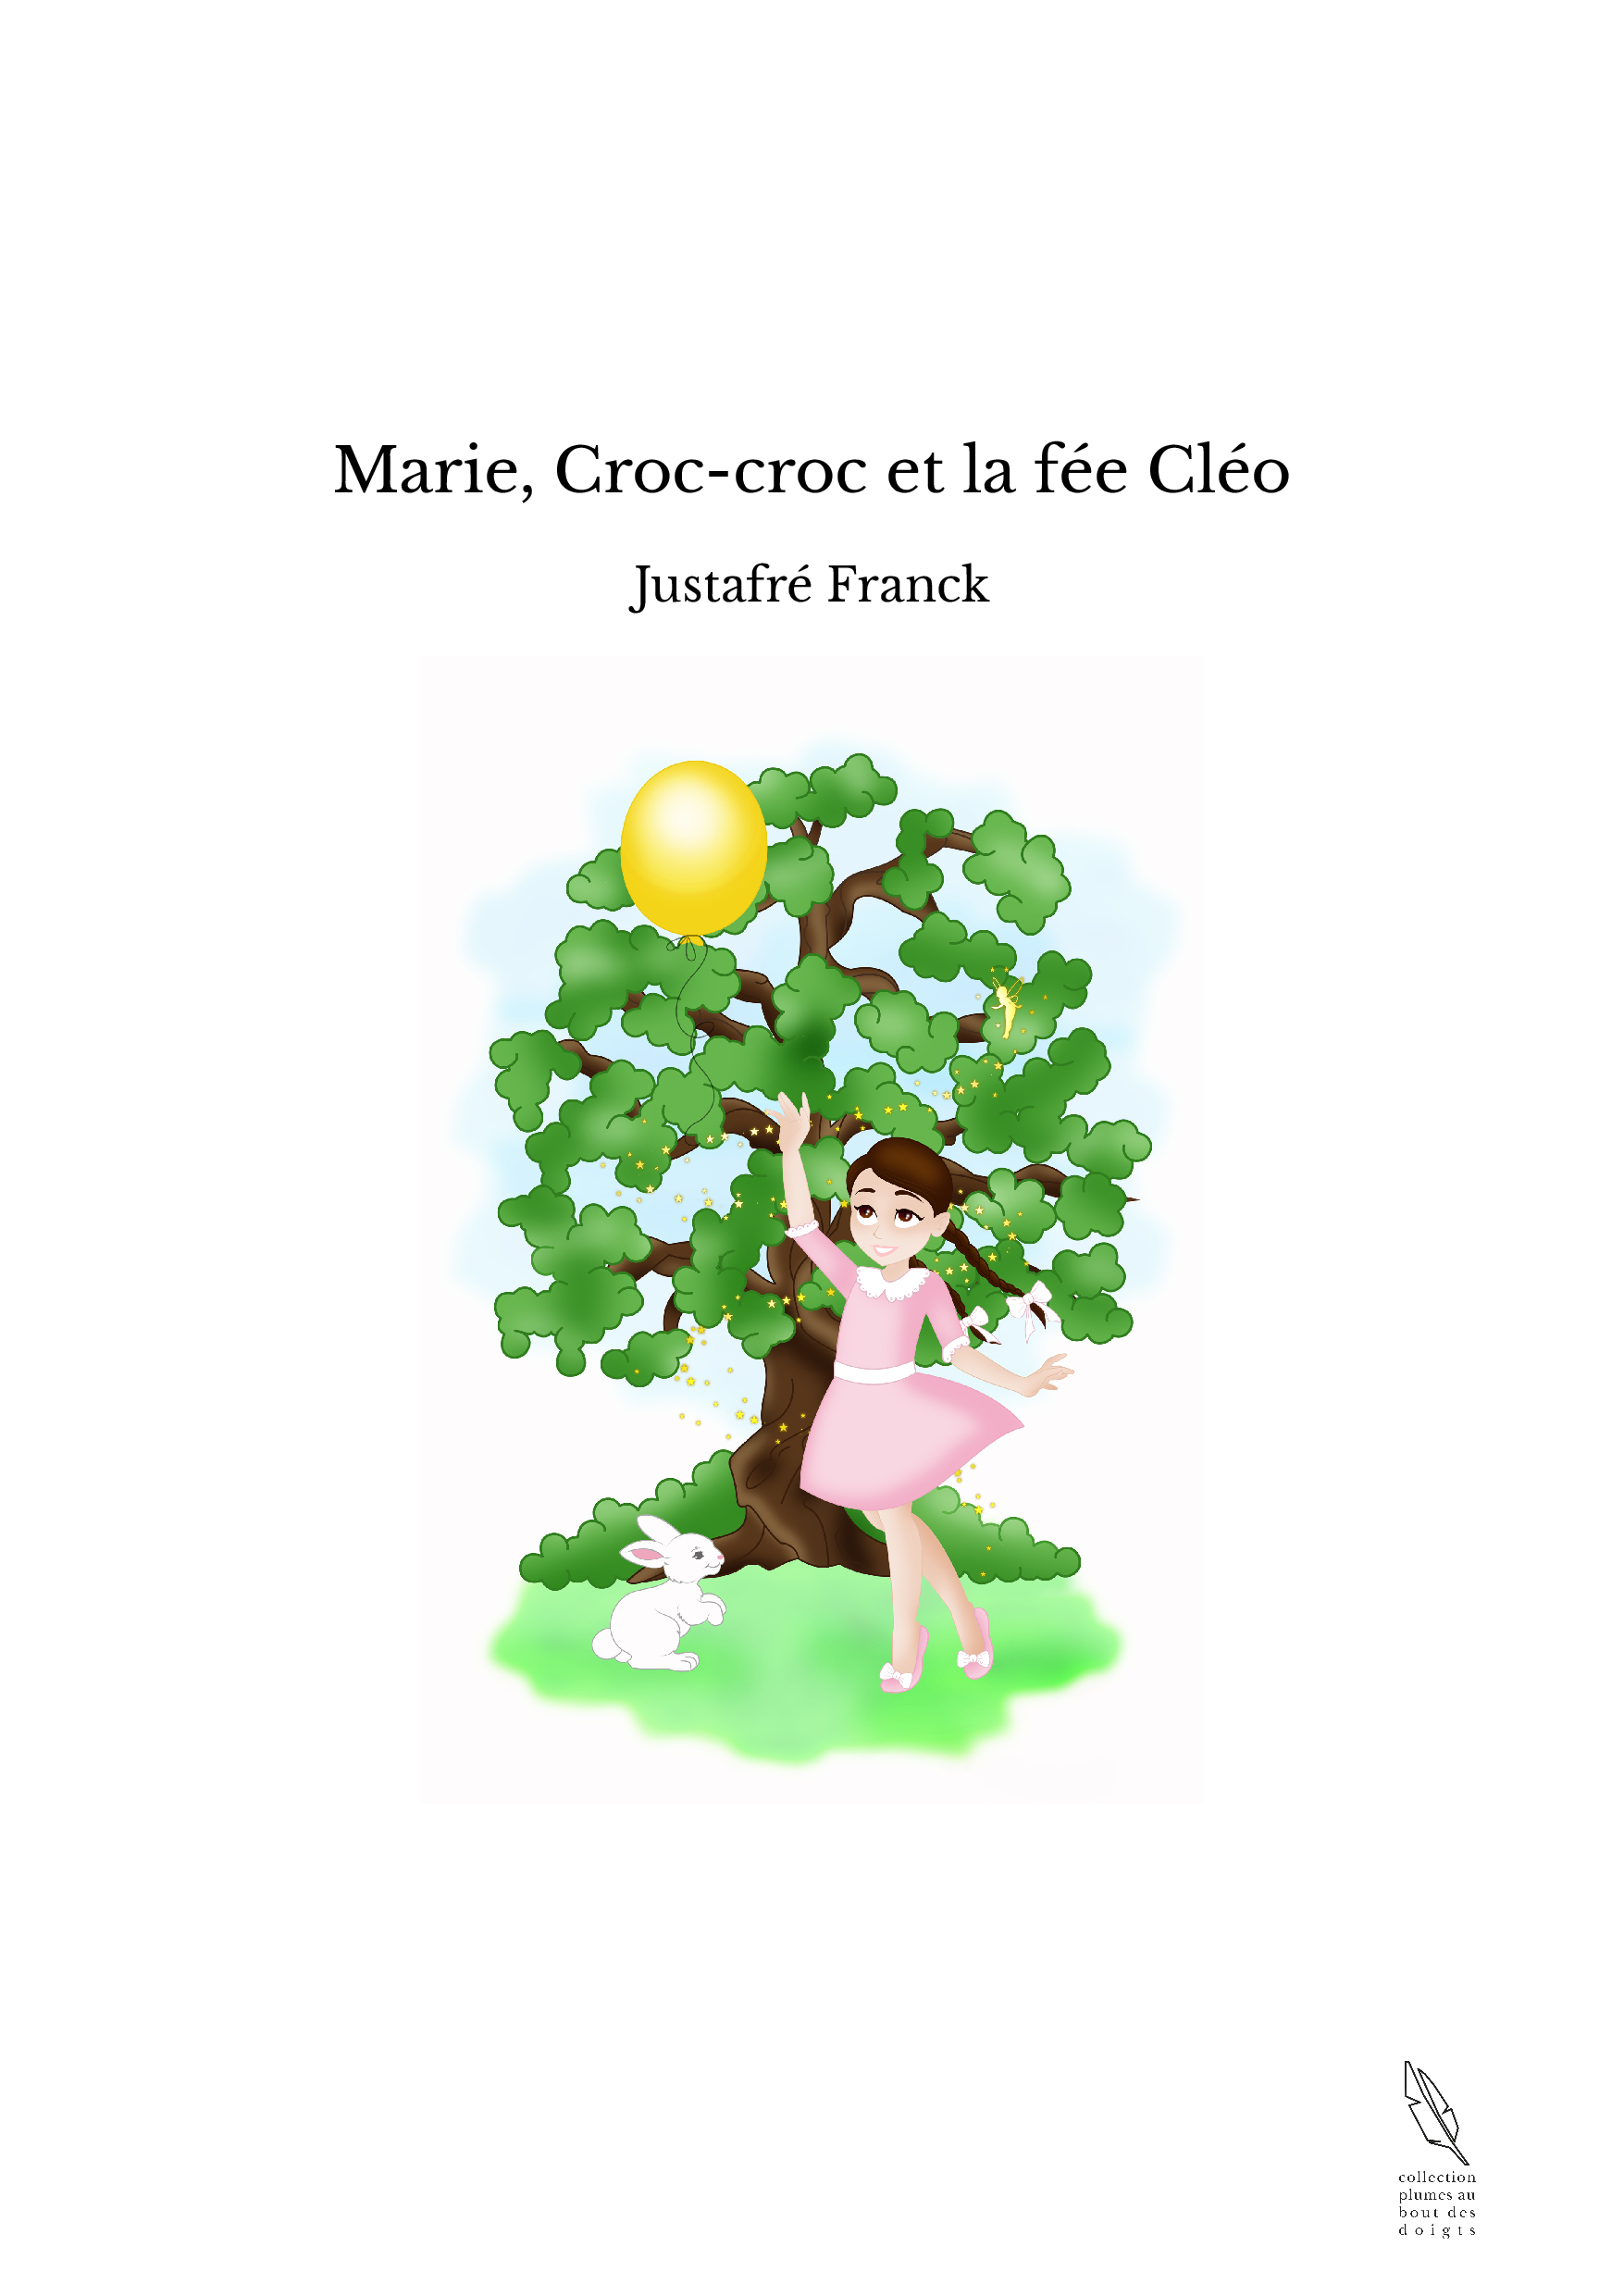 Marie, Croc-croc et la fée Cléo